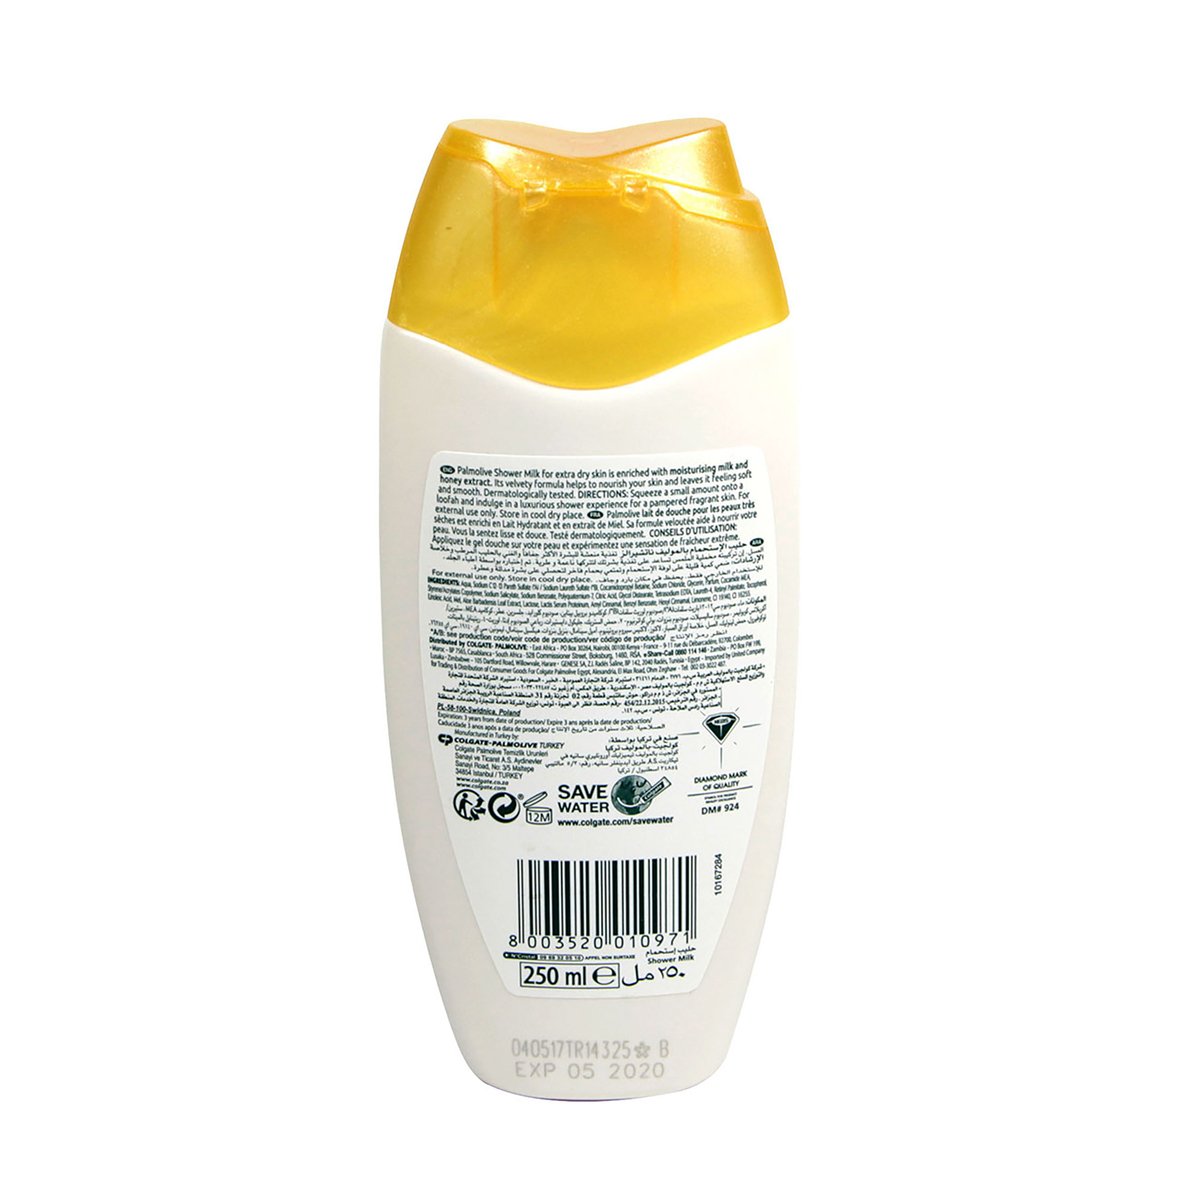 Palmolive Naturals Shower Gel Honey & Milk 250ml